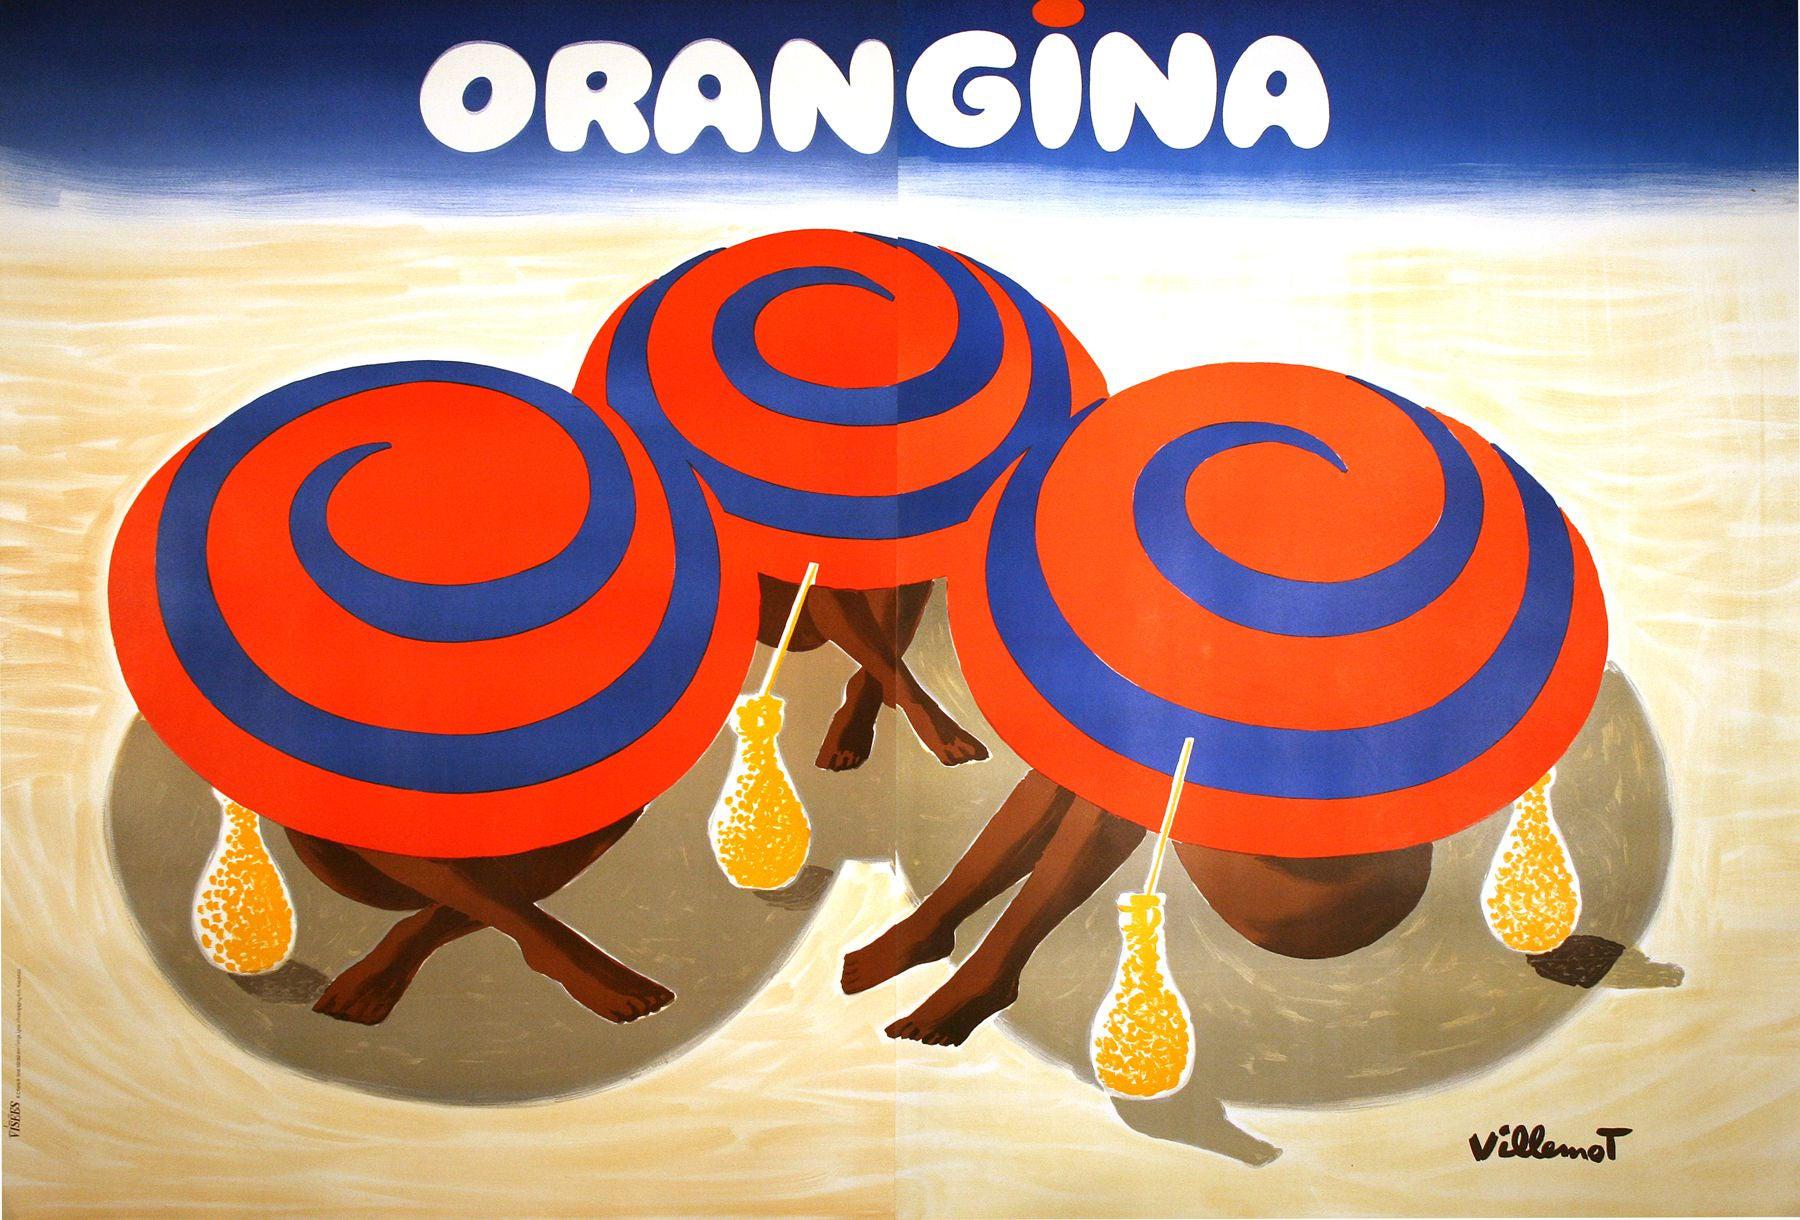 Vænne sig til Kirkegård Tilsvarende Original Vintage Orangina Poster by Bernard Villemot 1984 Umbrellas – The  Ross Art Group